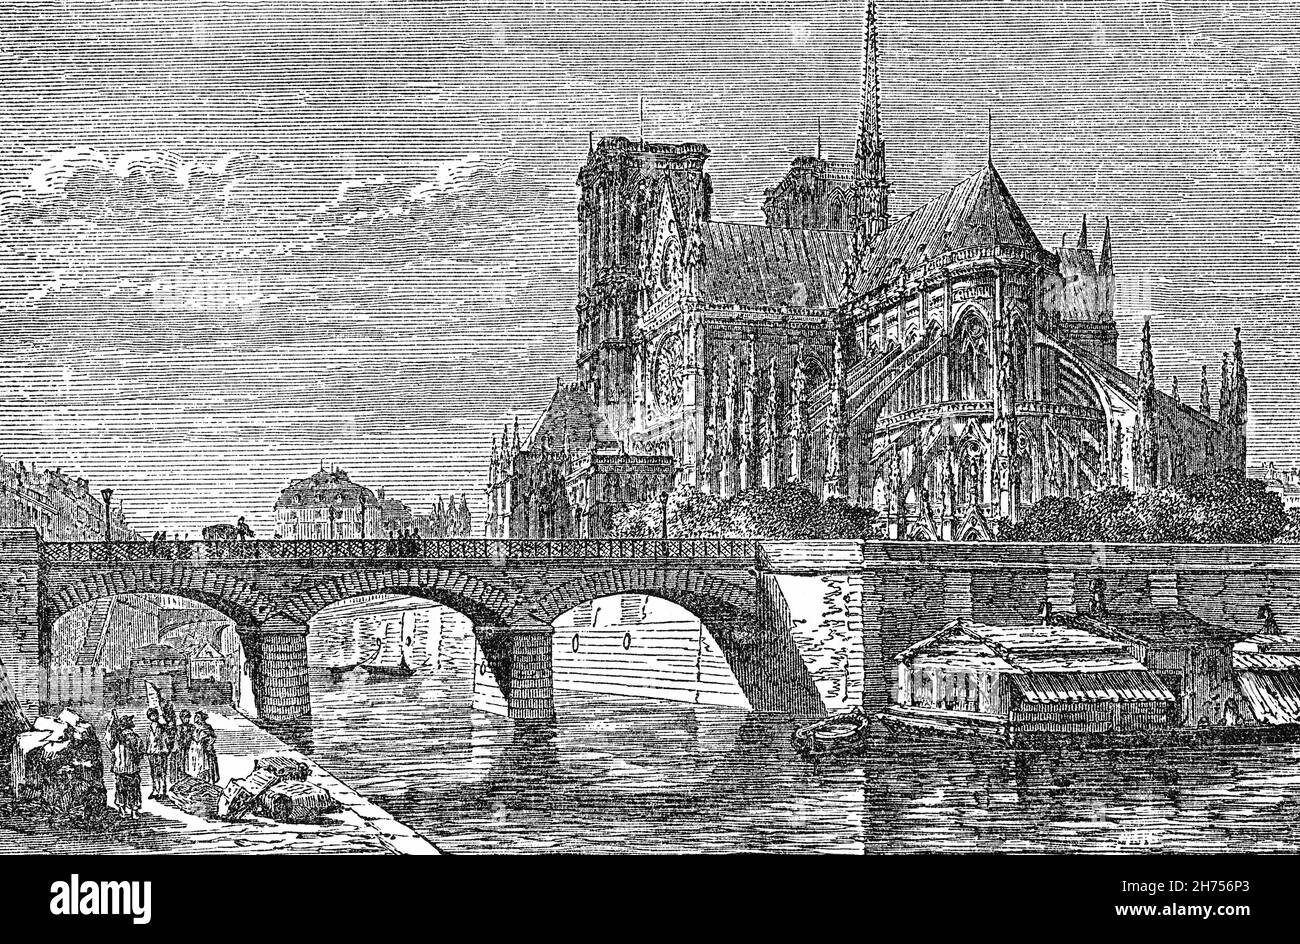 Eine Illustration von Notre-Dame de Paris aus dem späten 19th. Jahrhundert, auch bekannt als „Unsere Liebe Frau von Paris“, einer mittelalterlichen katholischen Kathedrale an der Île de la Cité im 4th. Arrondissement von Paris. Die Kathedrale, die hier von der Erzbischöflichen Brücke über die seine aus gesehen wird, wurde der Jungfrau Maria geweiht und gilt als eines der schönsten Beispiele der französischen Gotik. Der Bau der Kathedrale begann 1163 unter Bischof Maurice de Sully und wurde bis 1260 weitgehend abgeschlossen, obwohl sie in den folgenden Jahrhunderten häufig modifiziert wurde. Stockfoto